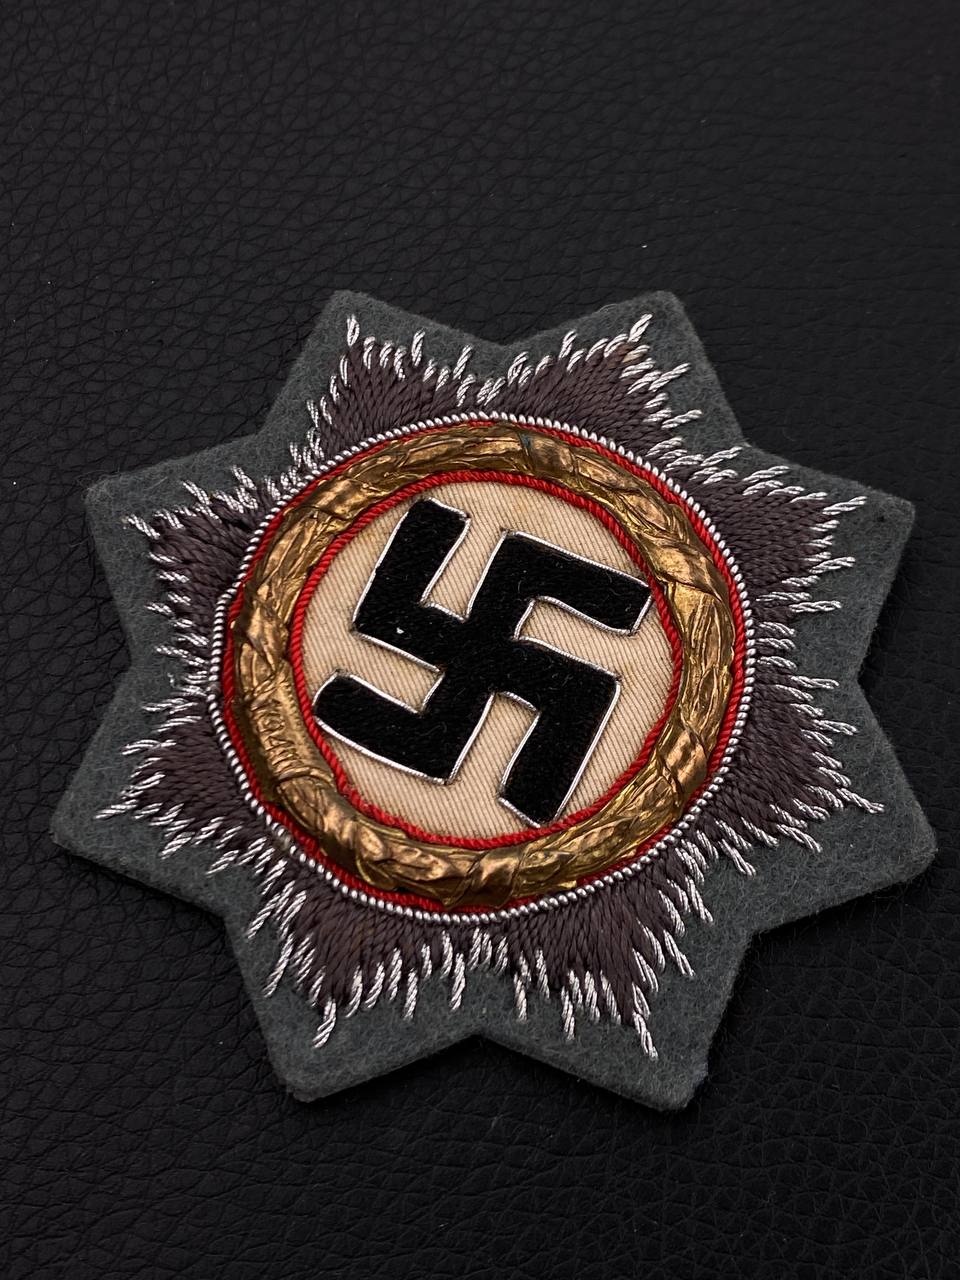 Орден немецкого креста (шитый) от Алексея С.